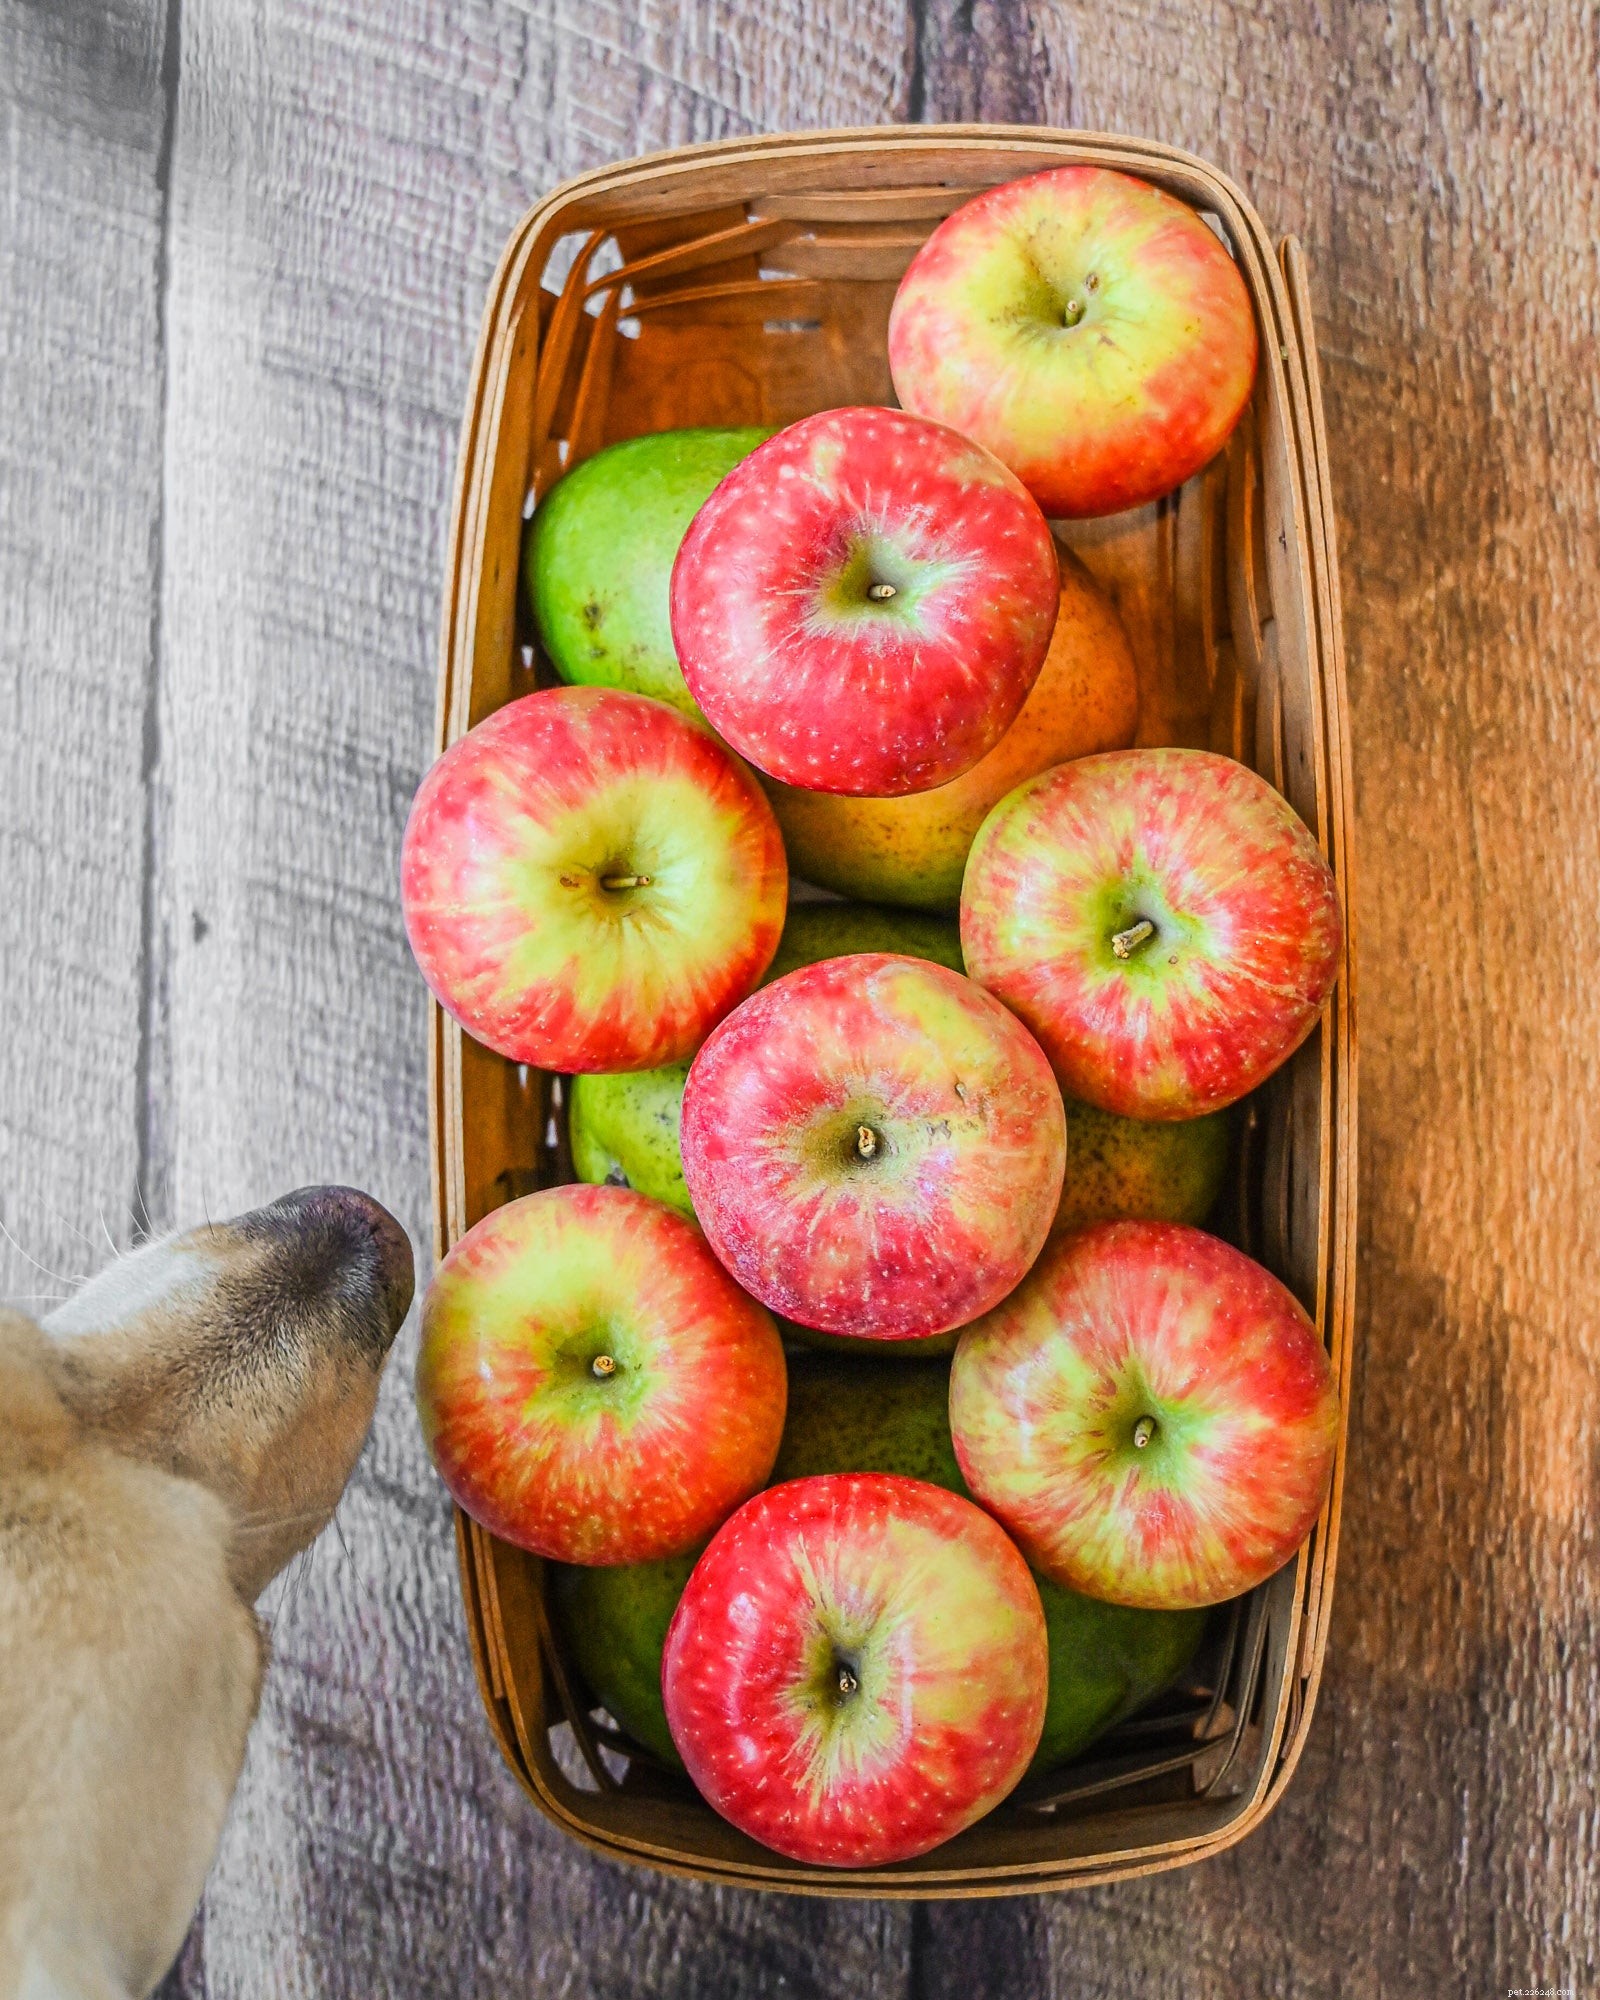 Il mio cane può mangiare le mele?